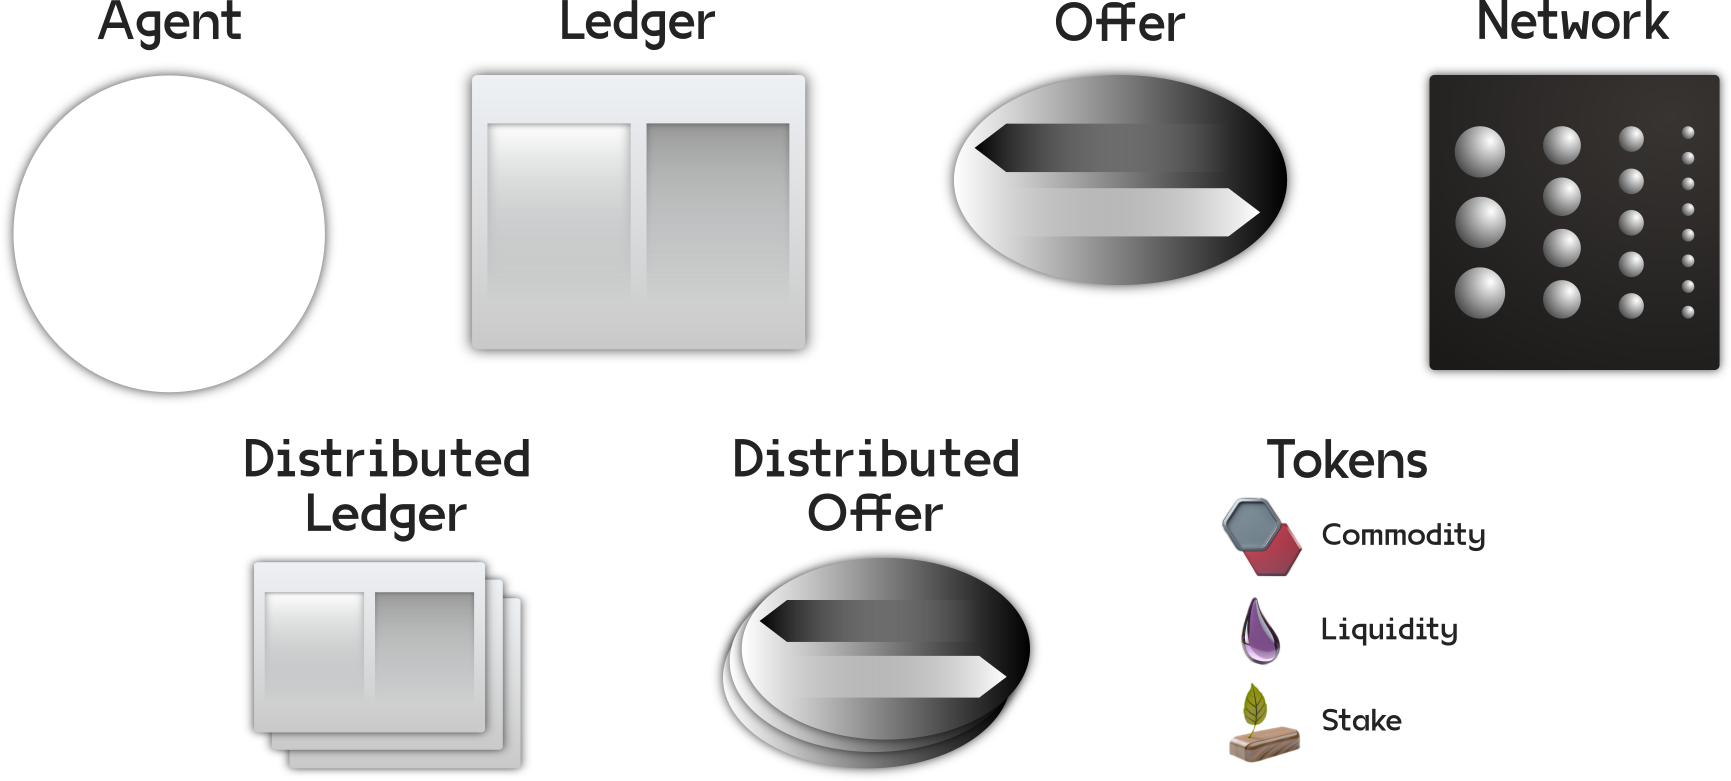 Figure 10.1 Visual elements representation legend